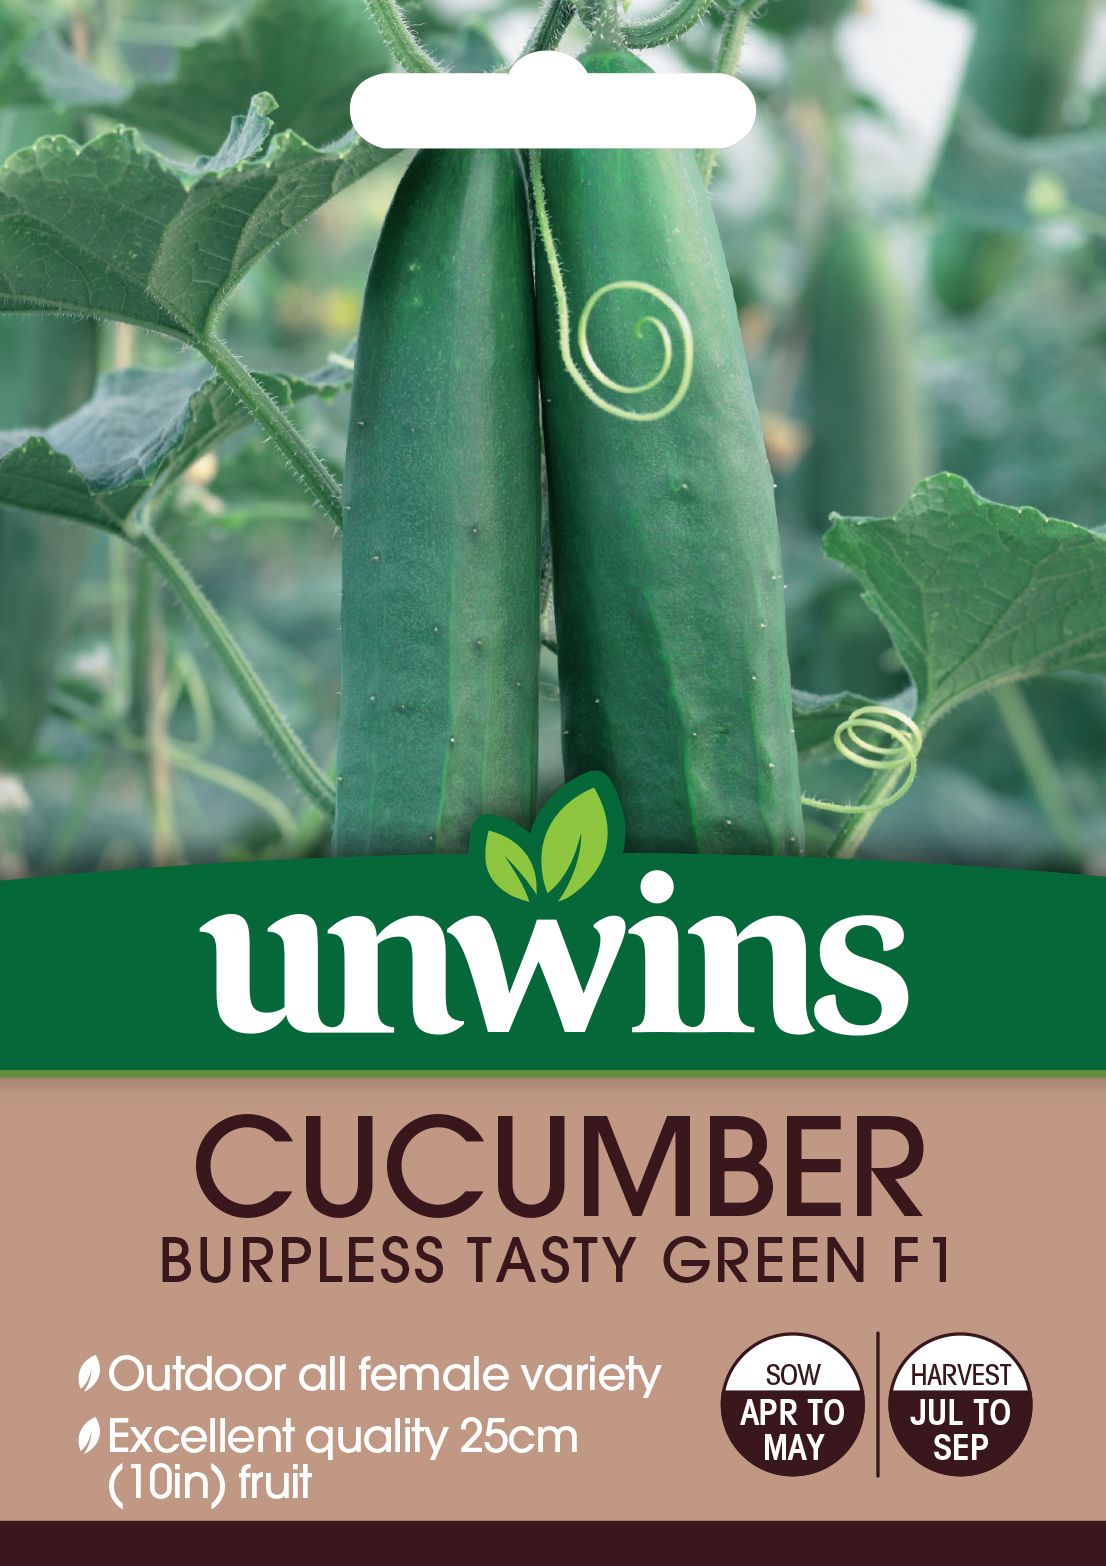 Cucumber Burpless Tasty Green F1